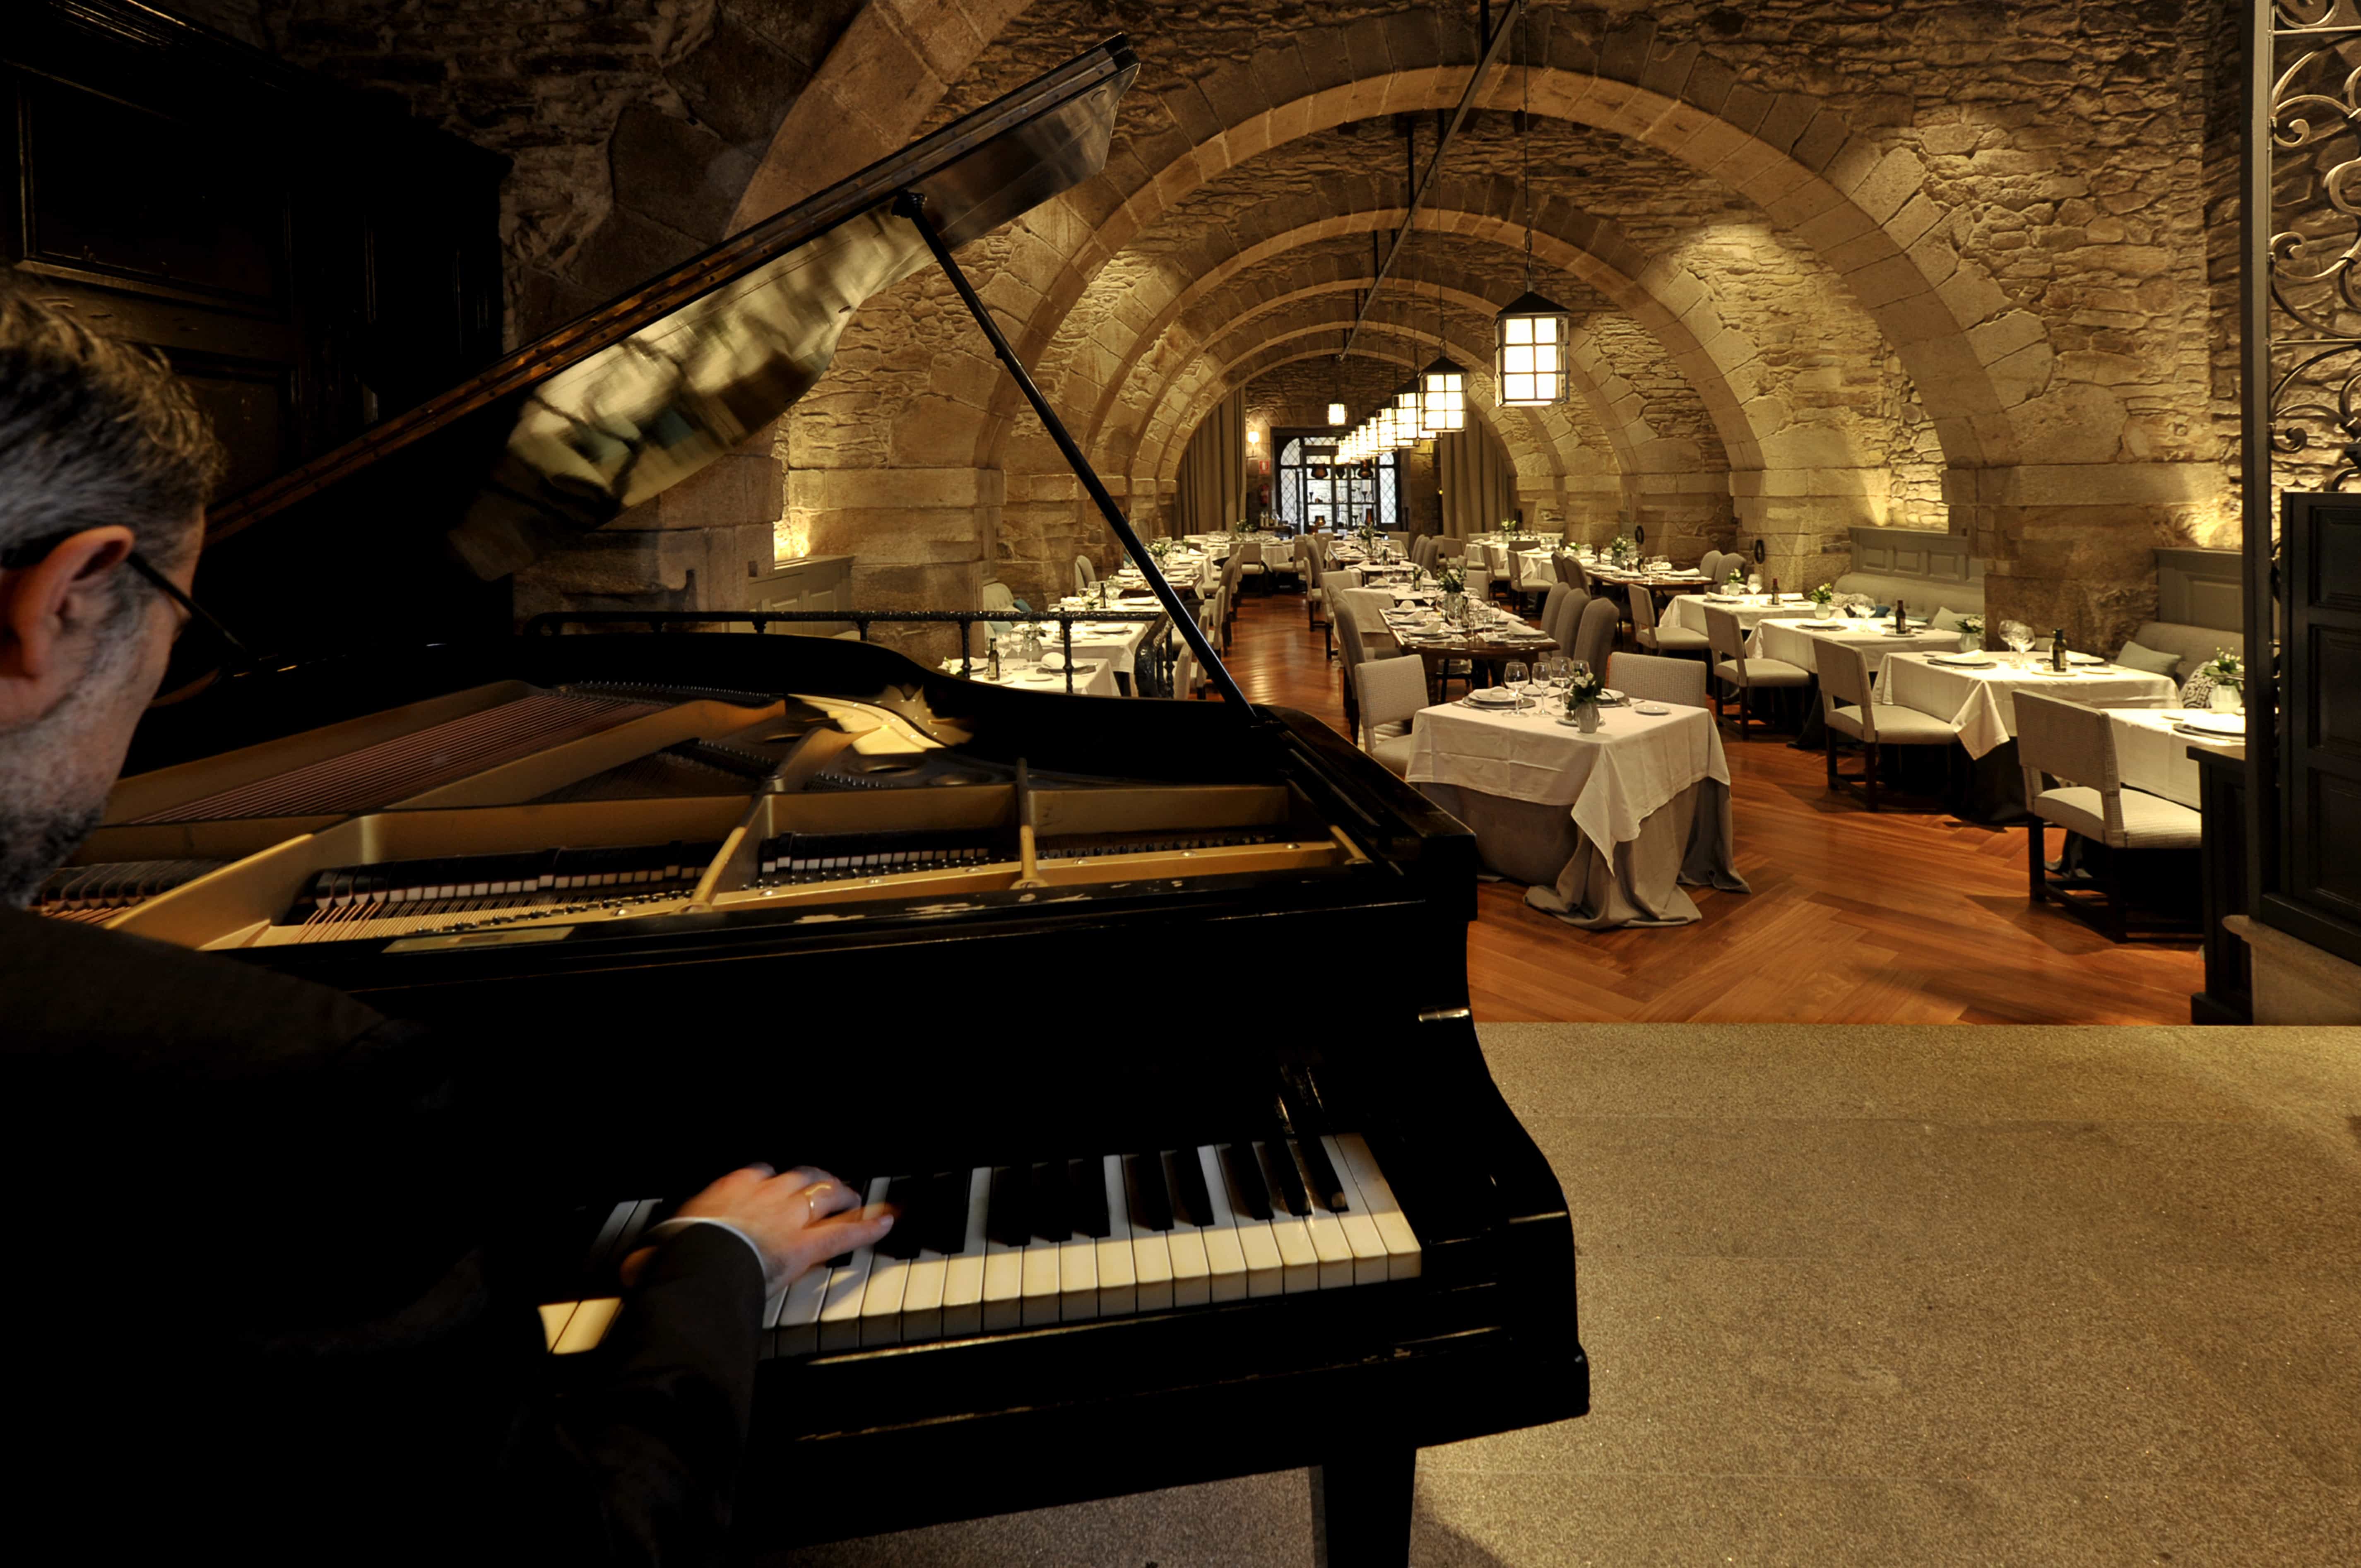 Vista del piano en el comedor con arcos de piedra del Restaurante dos Reis